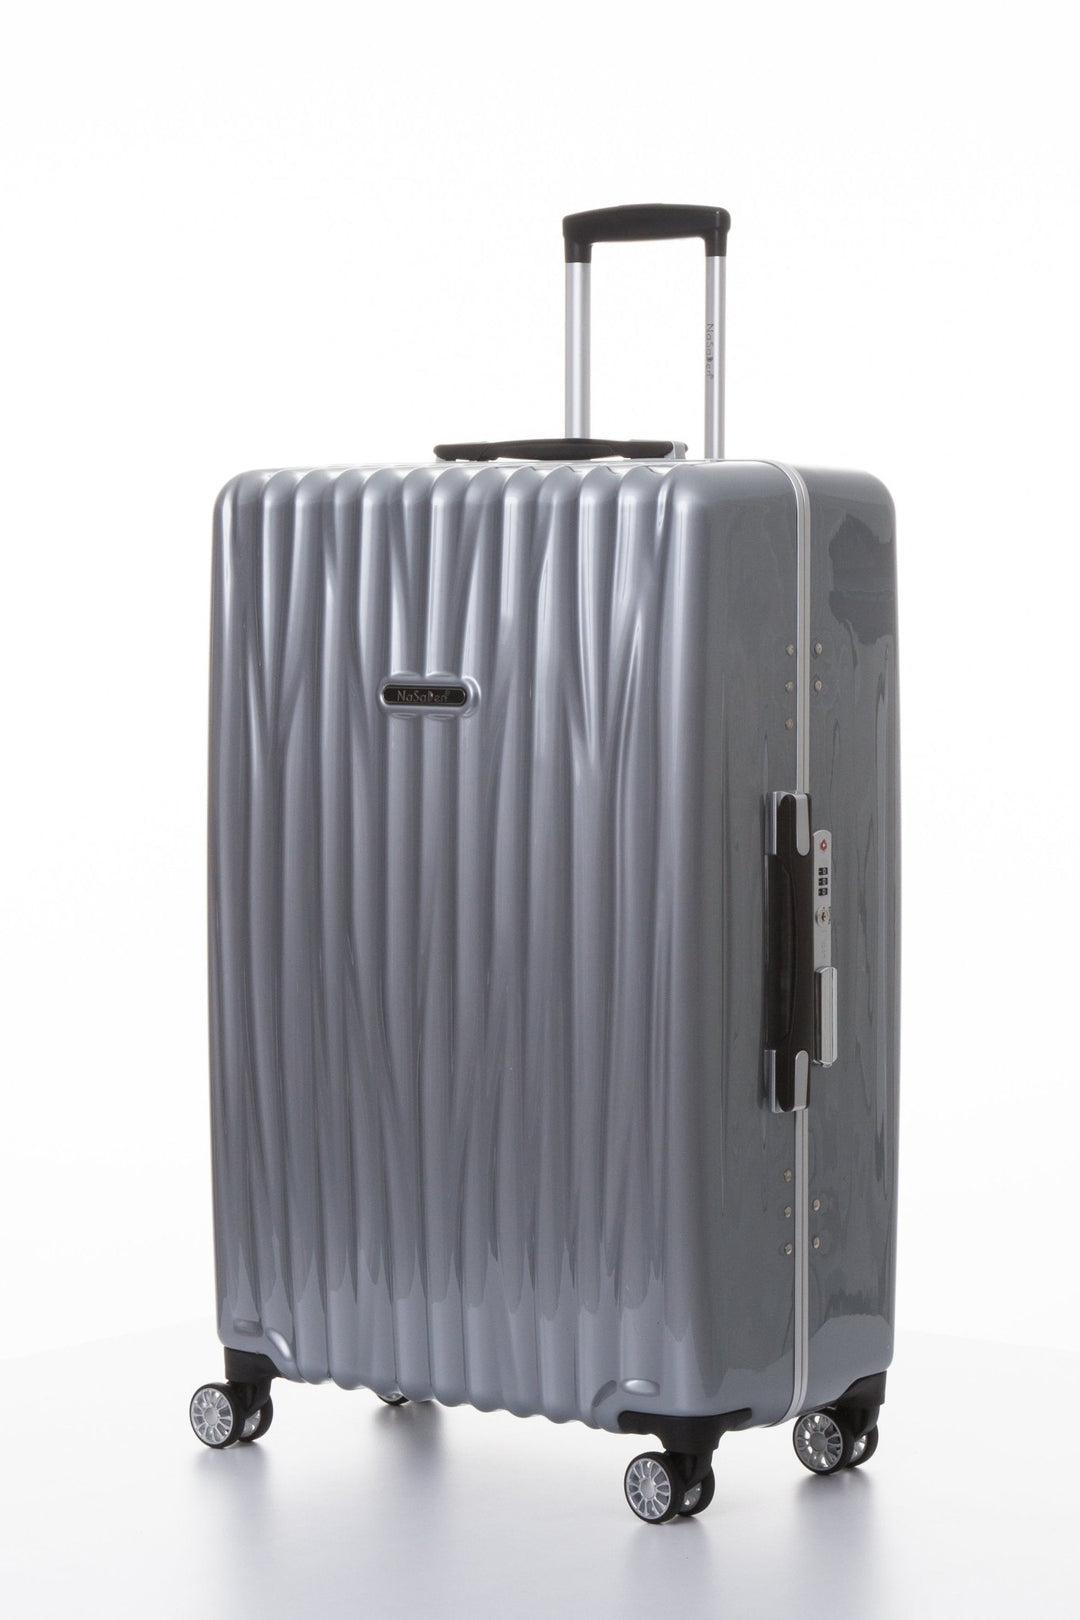 【海德堡】系列-超輕量鋁框窄框行李箱-德國NaSaDen納莎登旅行箱 - 采寓生活館NaSaDen